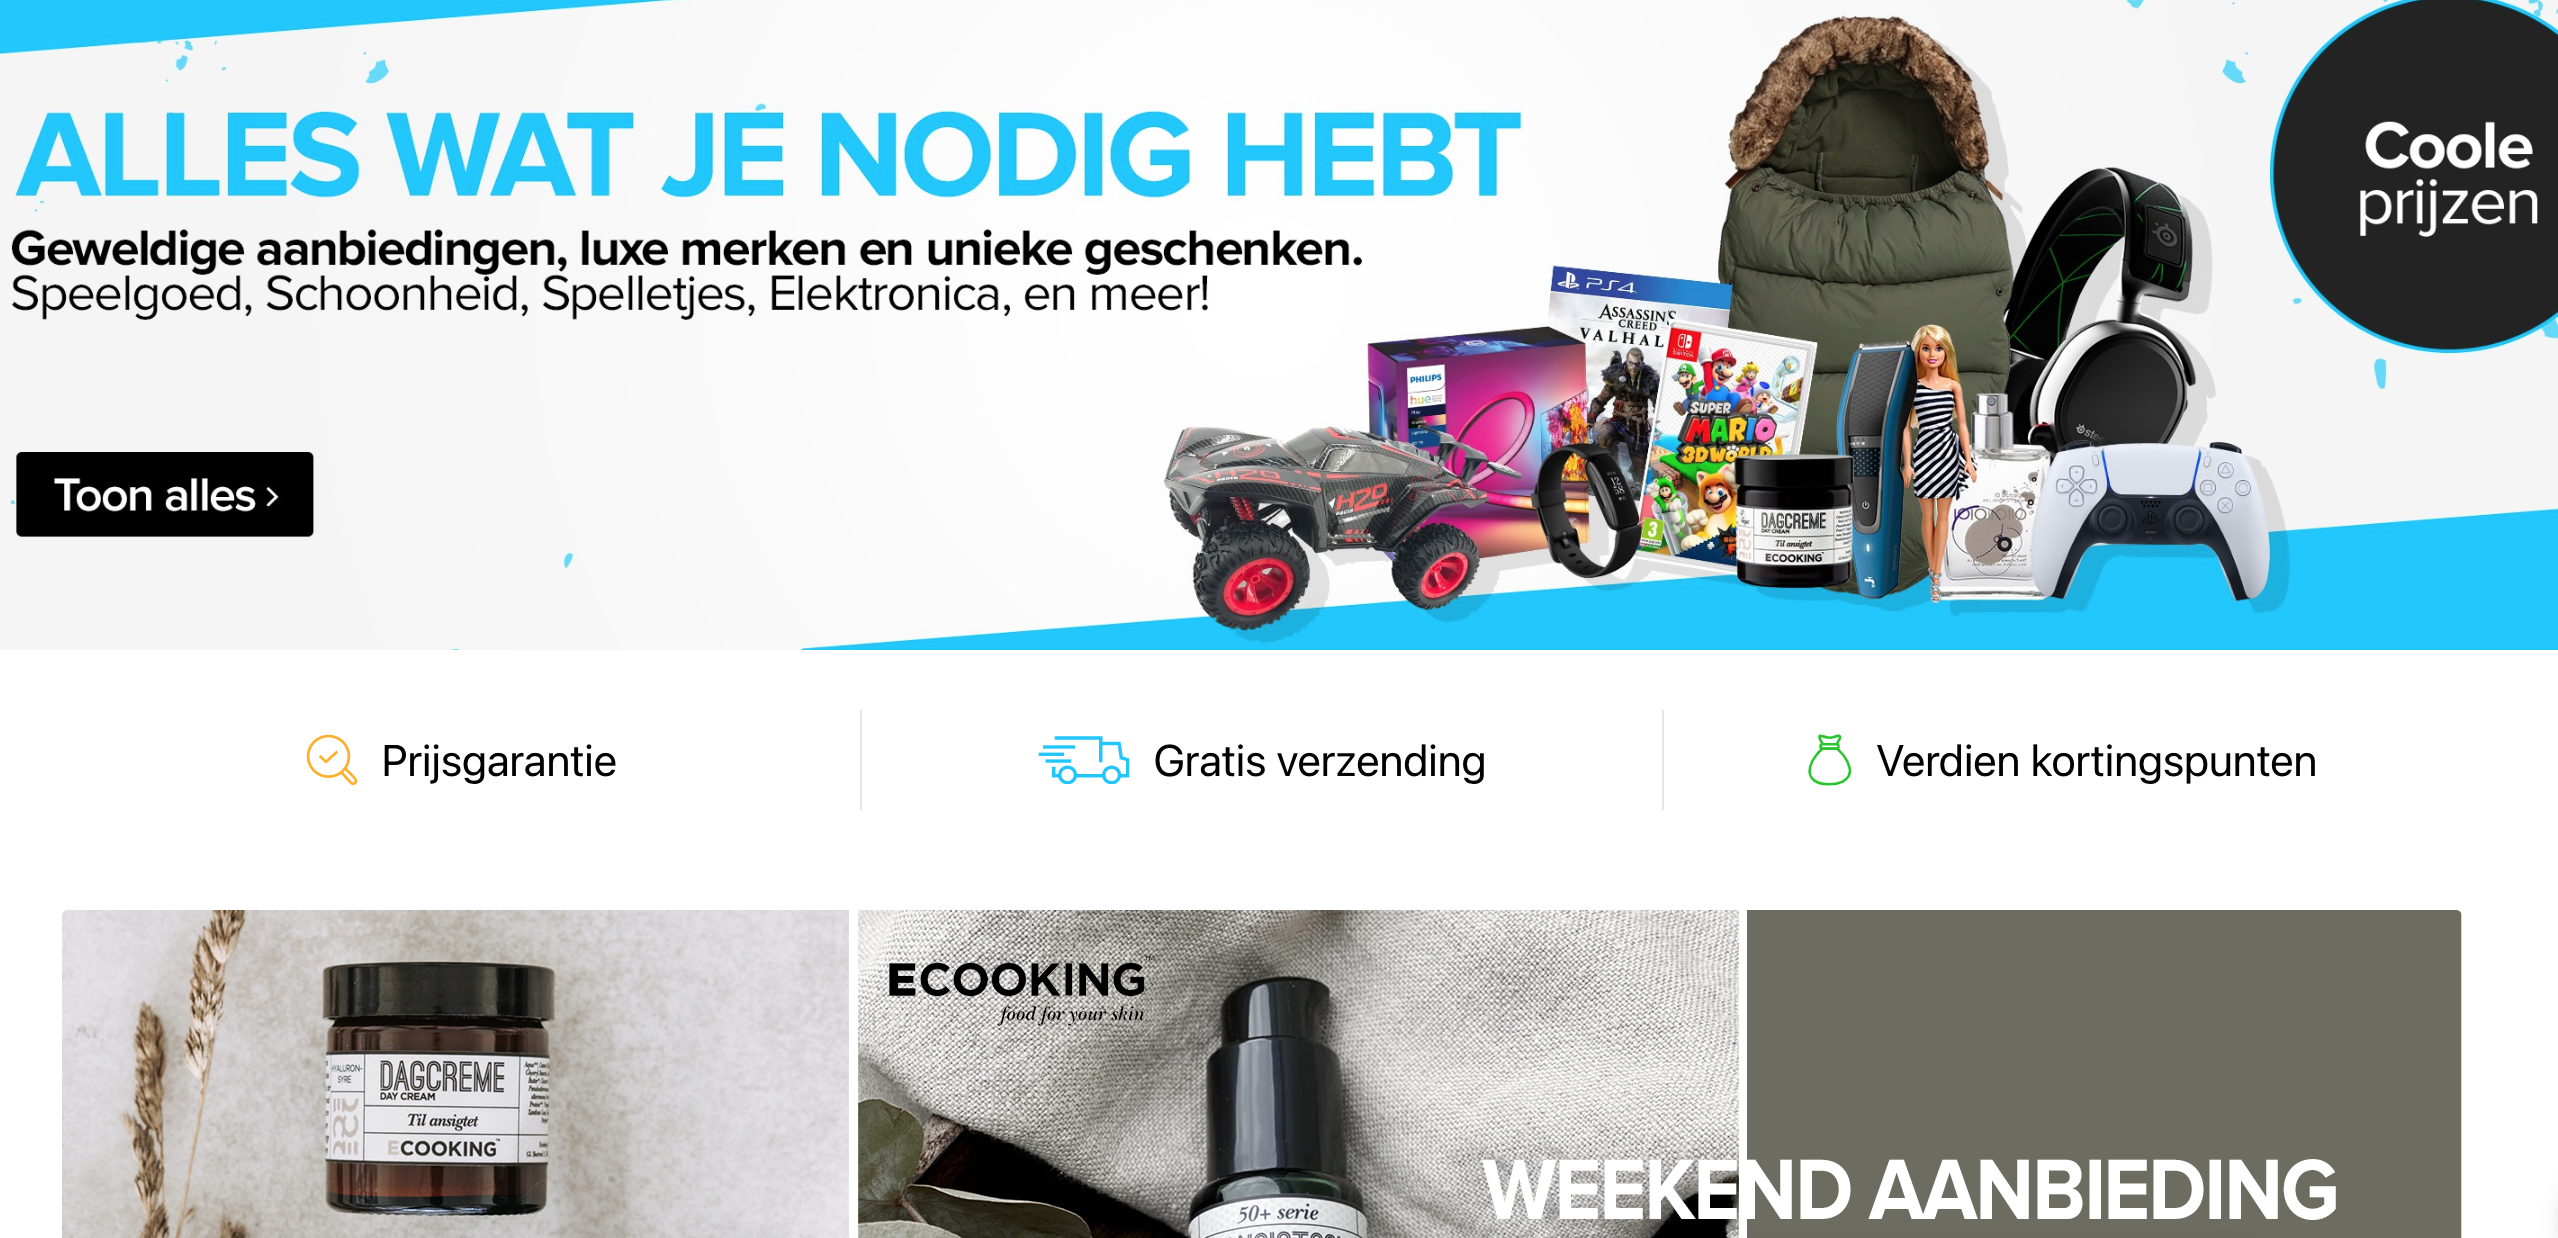 verlies uzelf Kwestie wit Achteraf betalen met afterpay bij Coolshop.nl - Online Bestellen & Achteraf  Betalen